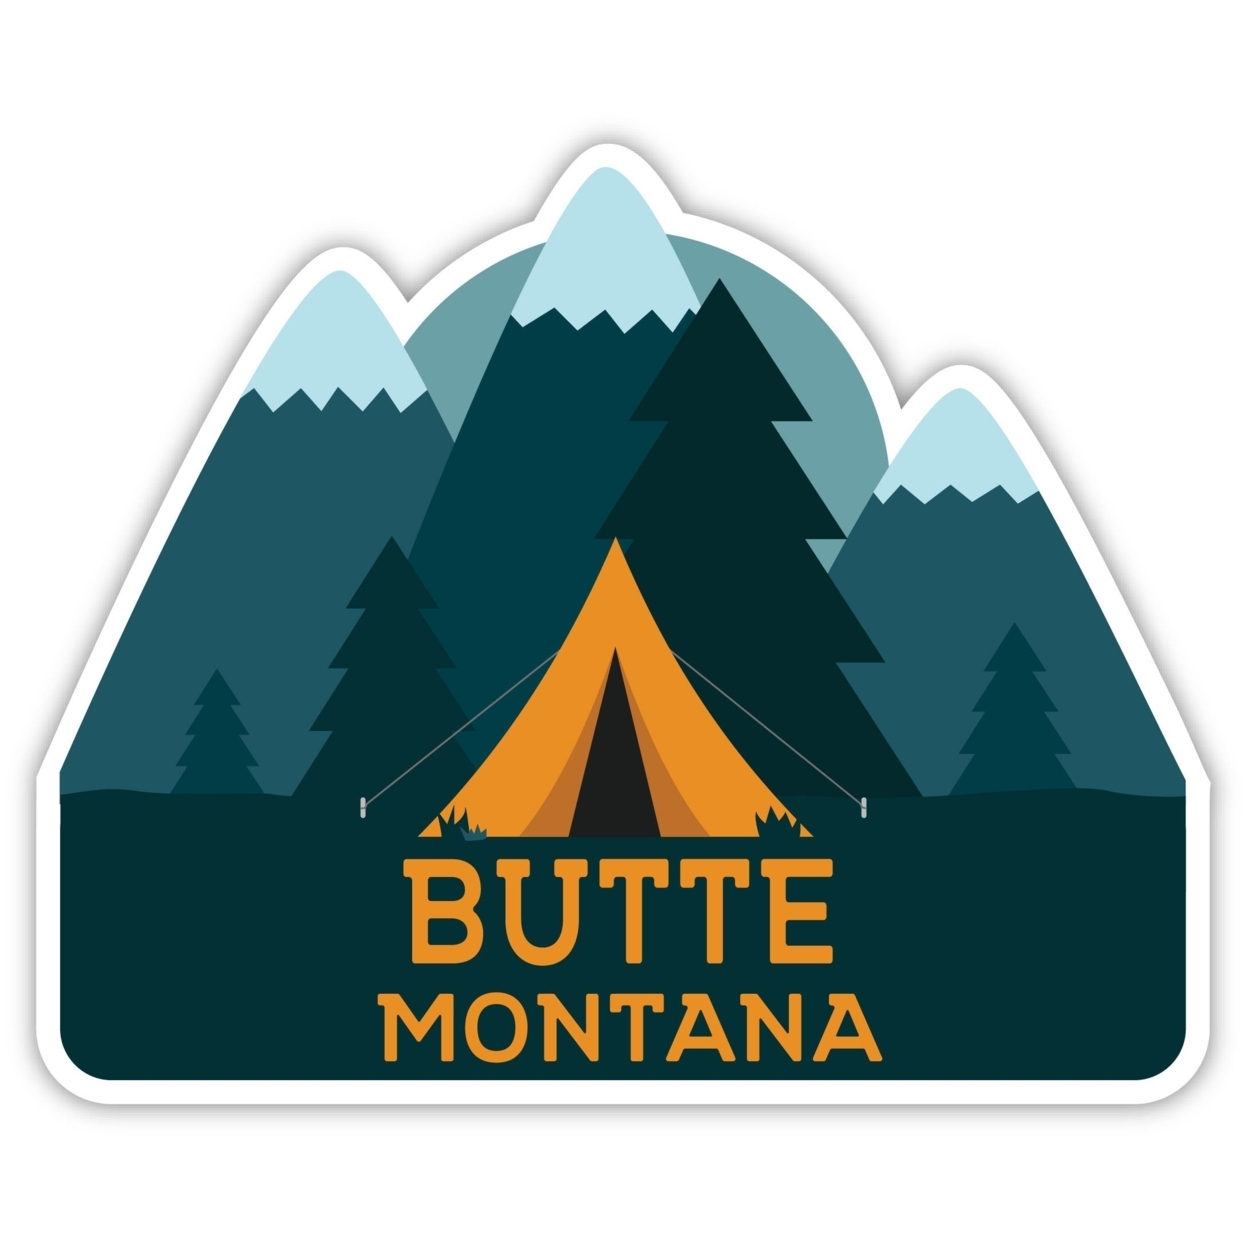 Butte Montana Souvenir Decorative Stickers (Choose Theme And Size) - Single Unit, 10-Inch, Tent